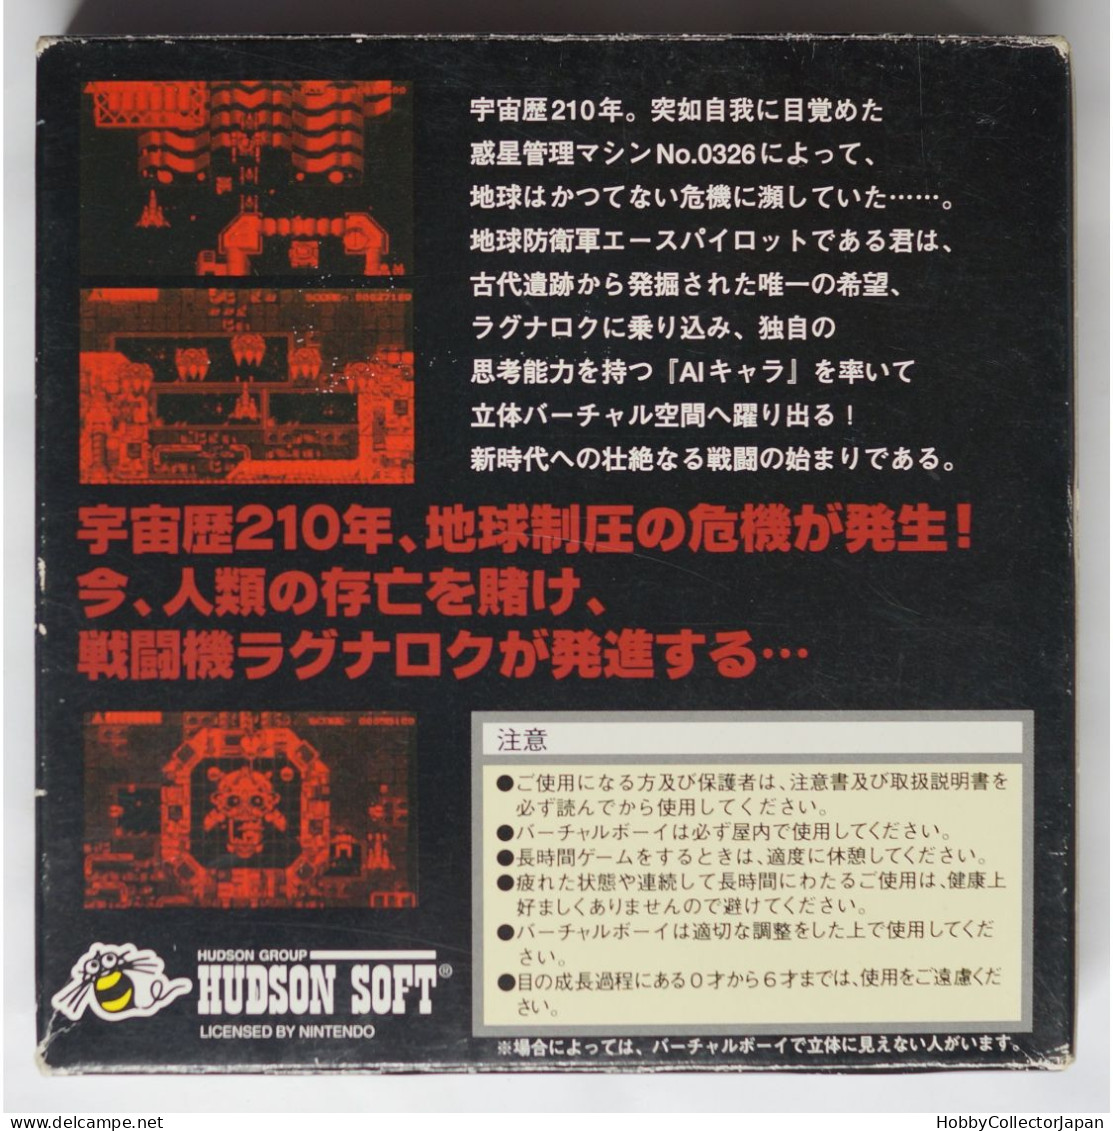 Vertical Force VUE-P-VH3J(JPN) 4988607005207 Virtual Boy Game - Virtual Boy